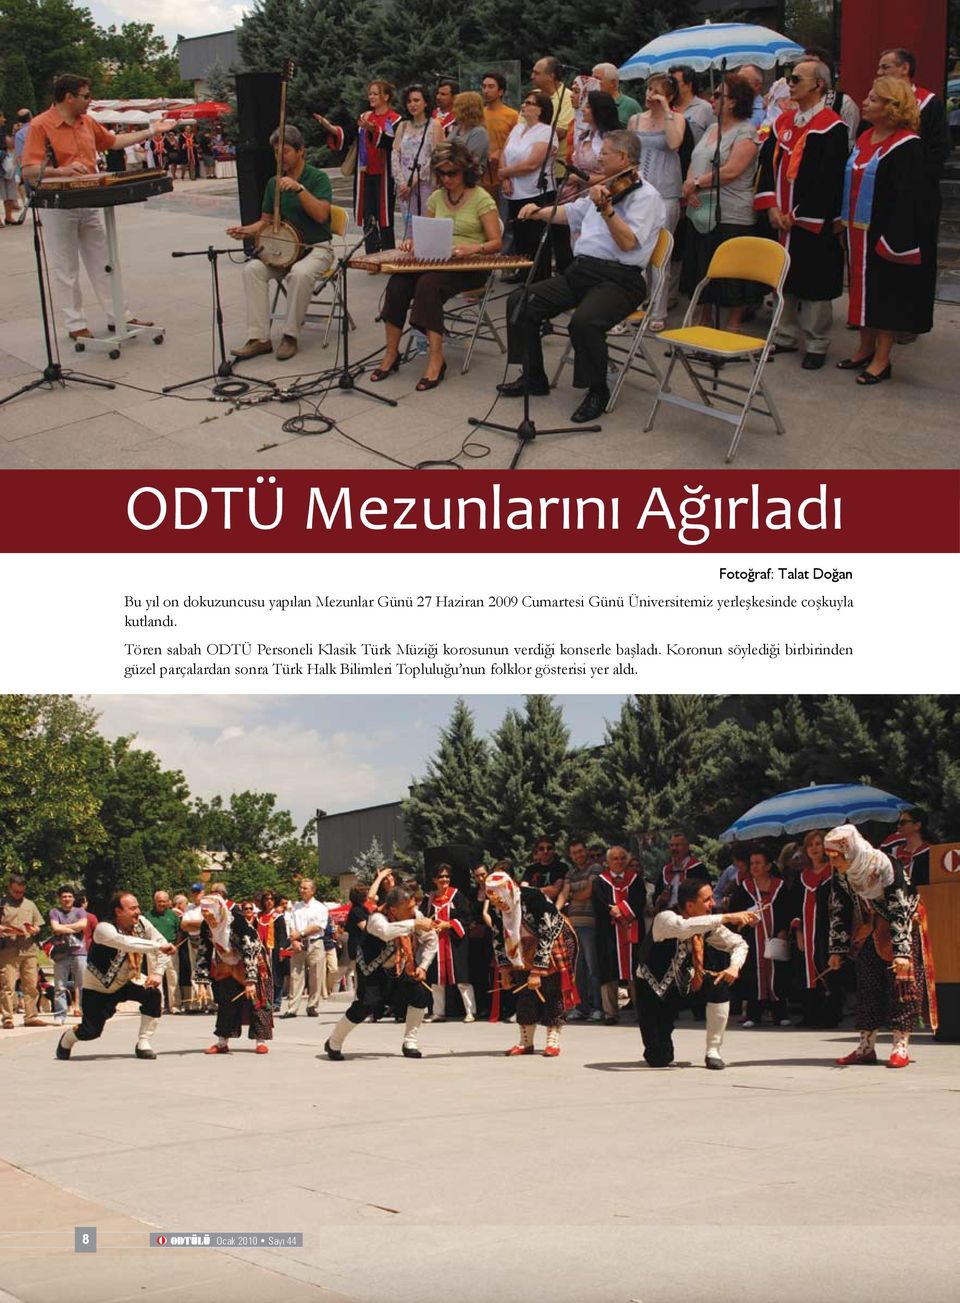 Tören sabah ODTÜ Personeli Klasik Türk Müziği korosunun verdiği konserle başladı.